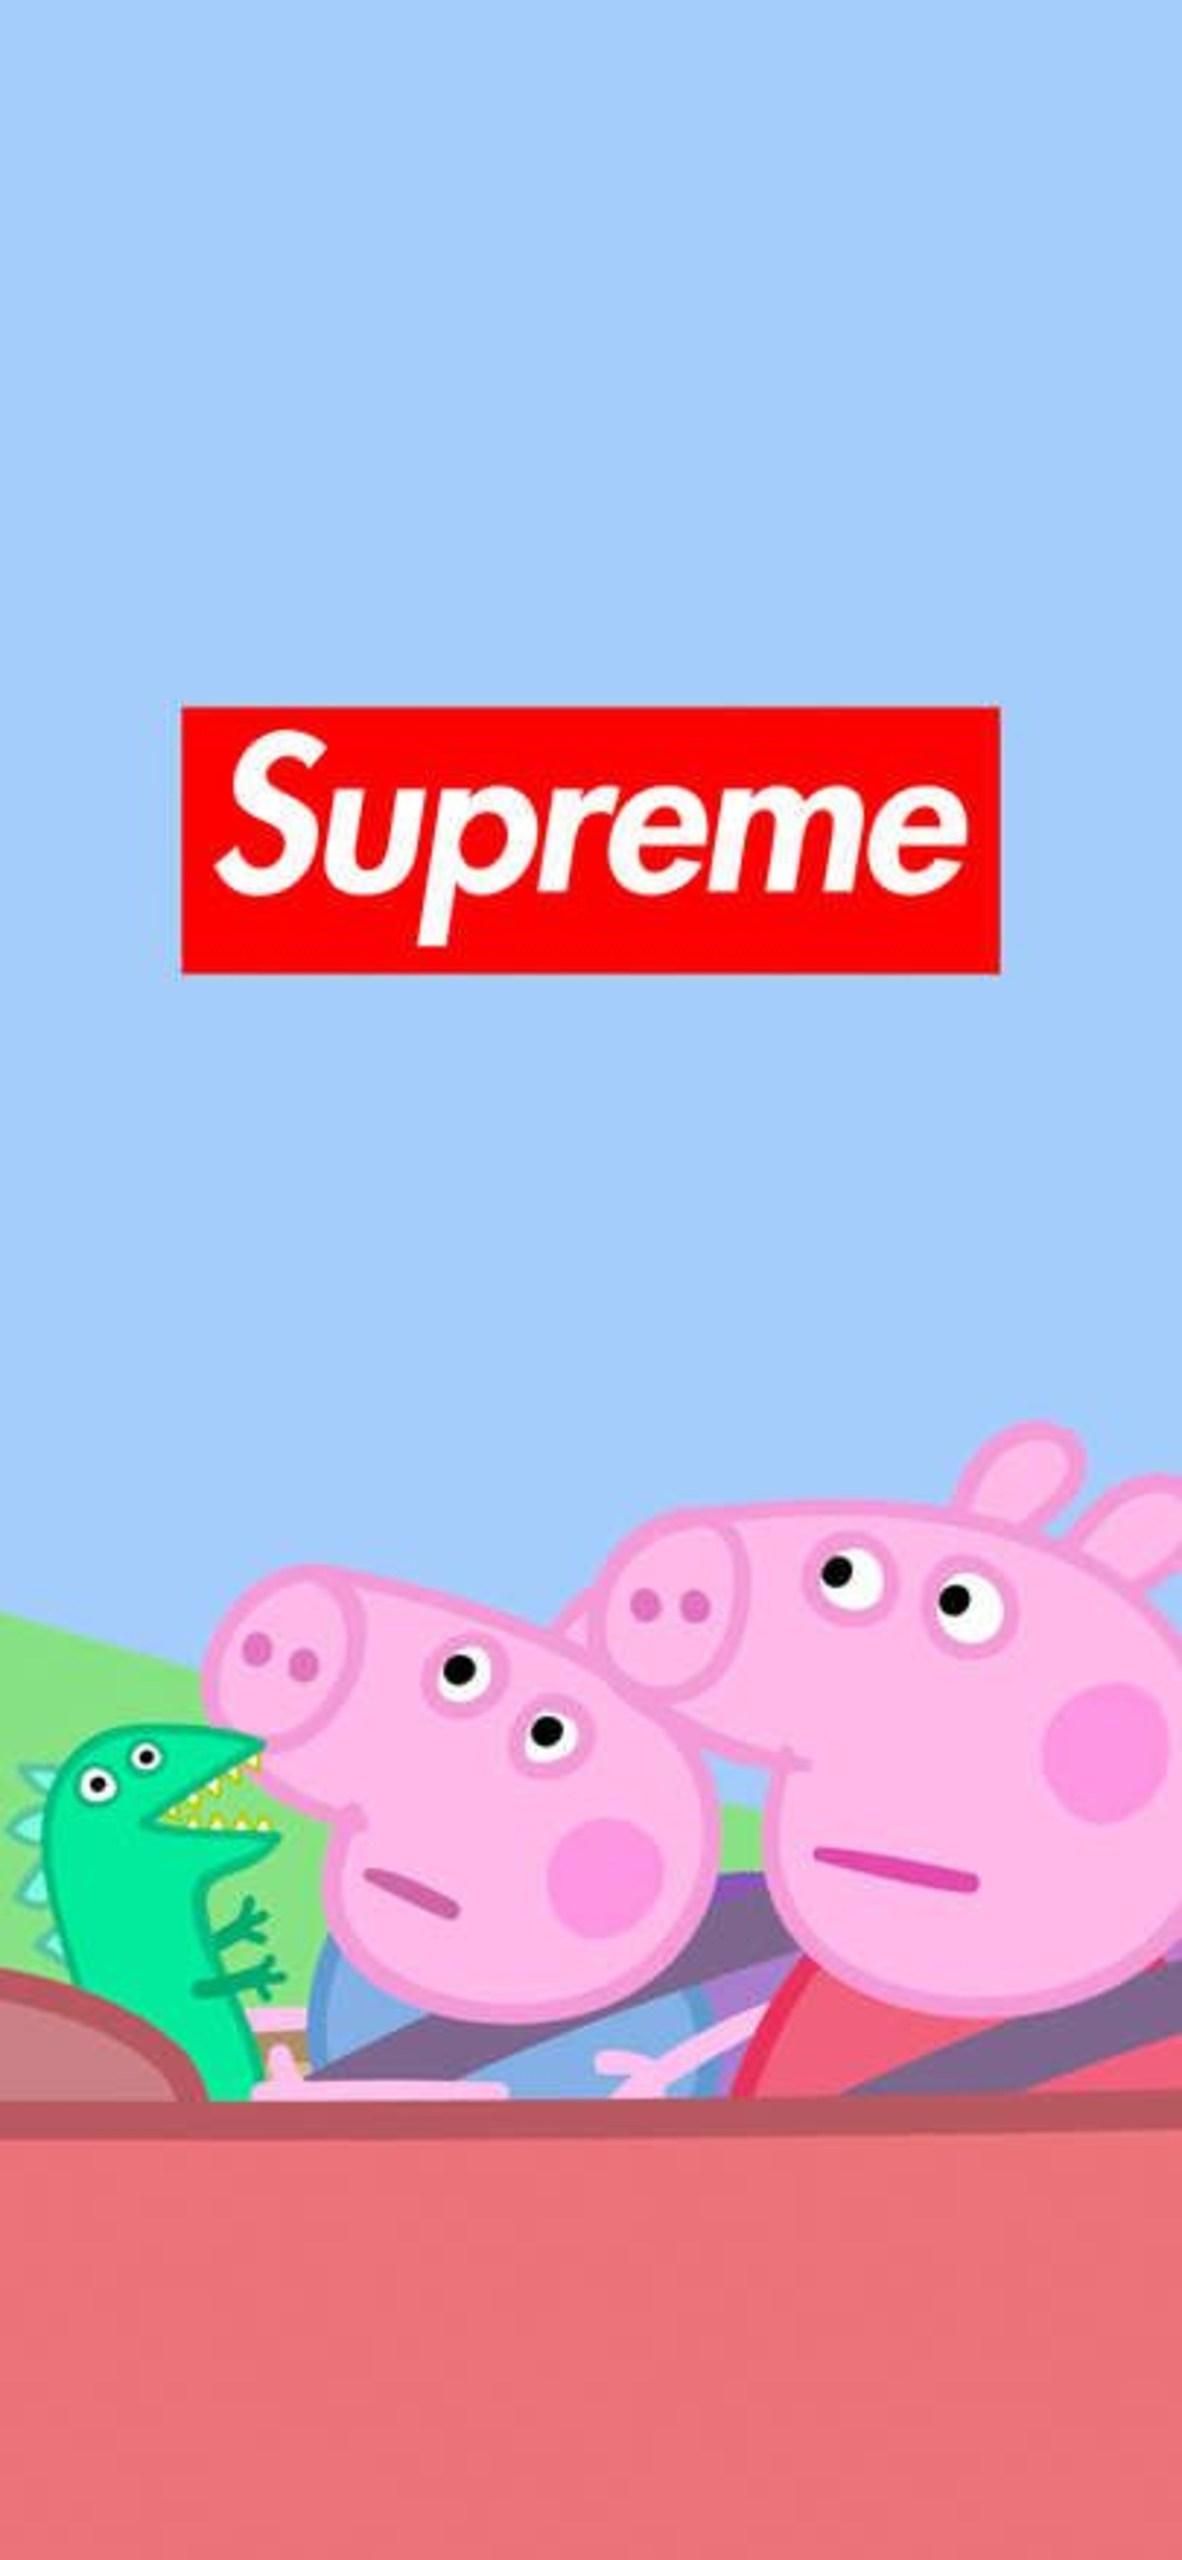 Peppa Pig Meme Wallpapers - Wallpaper Cave